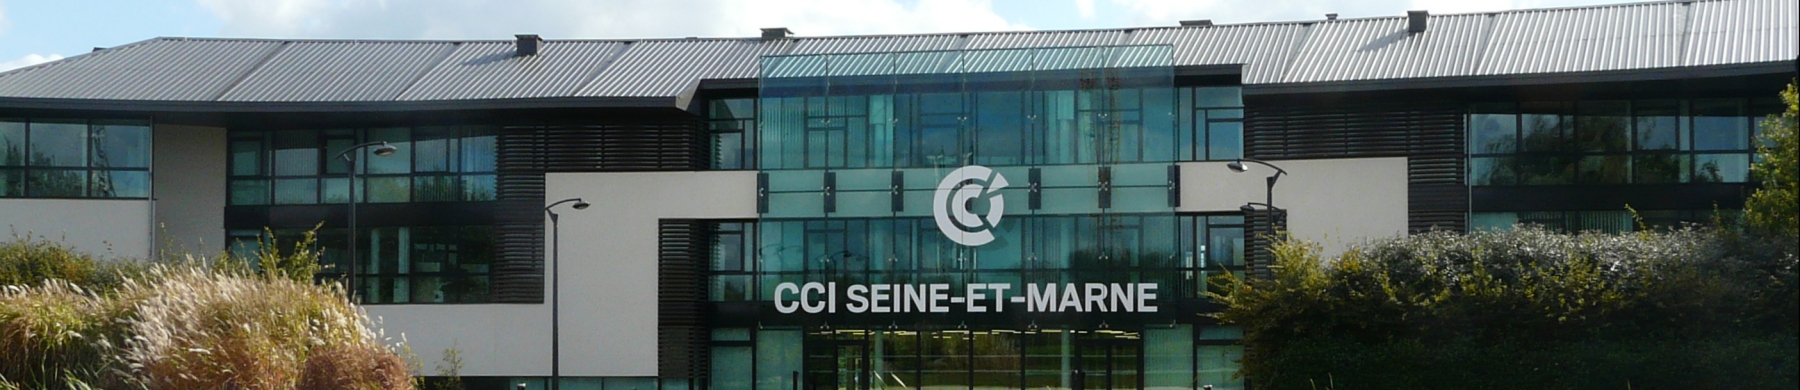 CCI Seine-et-Marne